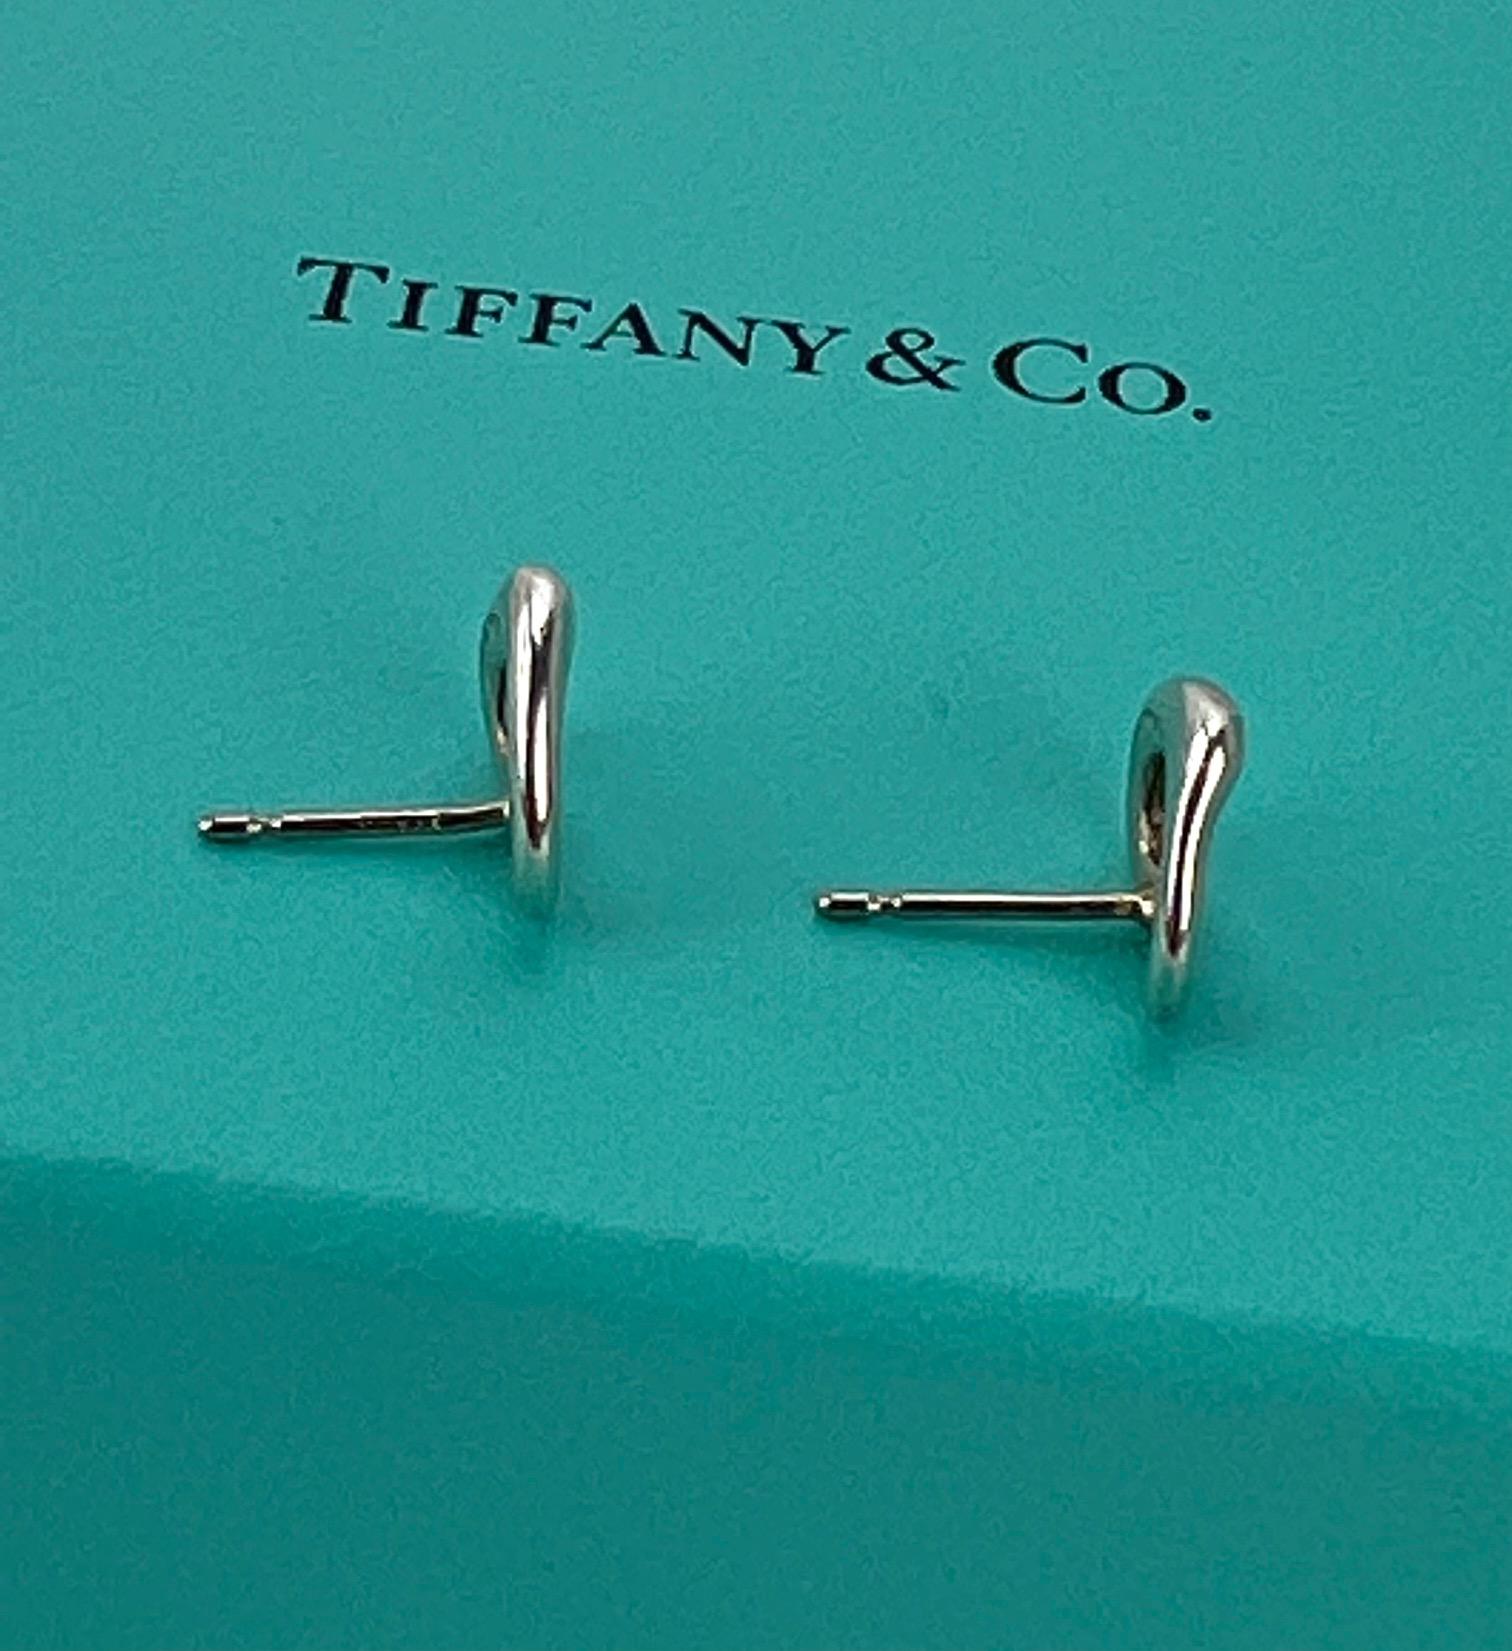  TIFFANY Open Heart Stud Earrings in Sterling Silver 925 Elsa Peretti  6